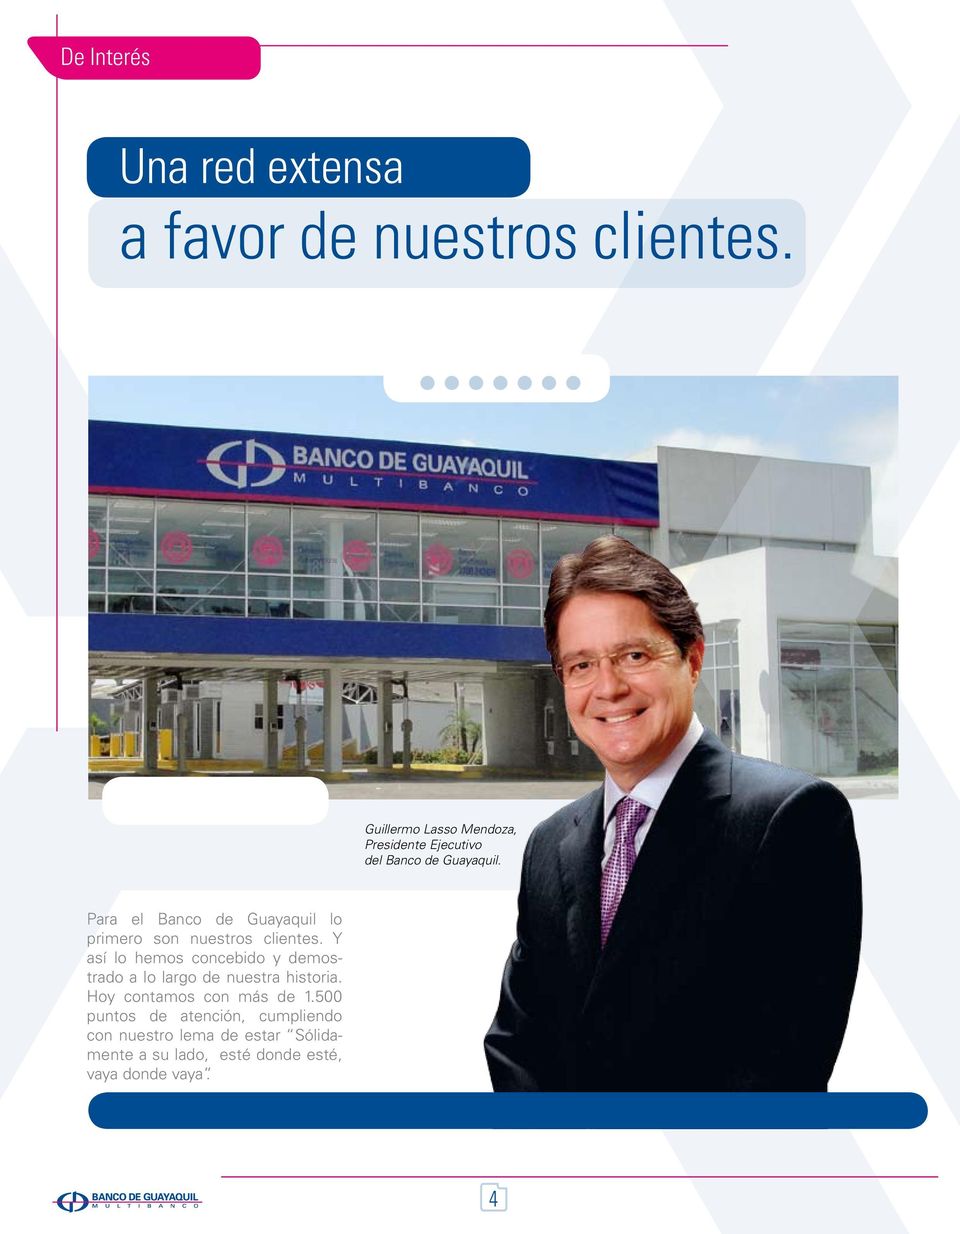 Para el Banco de Guayaquil lo primero son nuestros clientes.